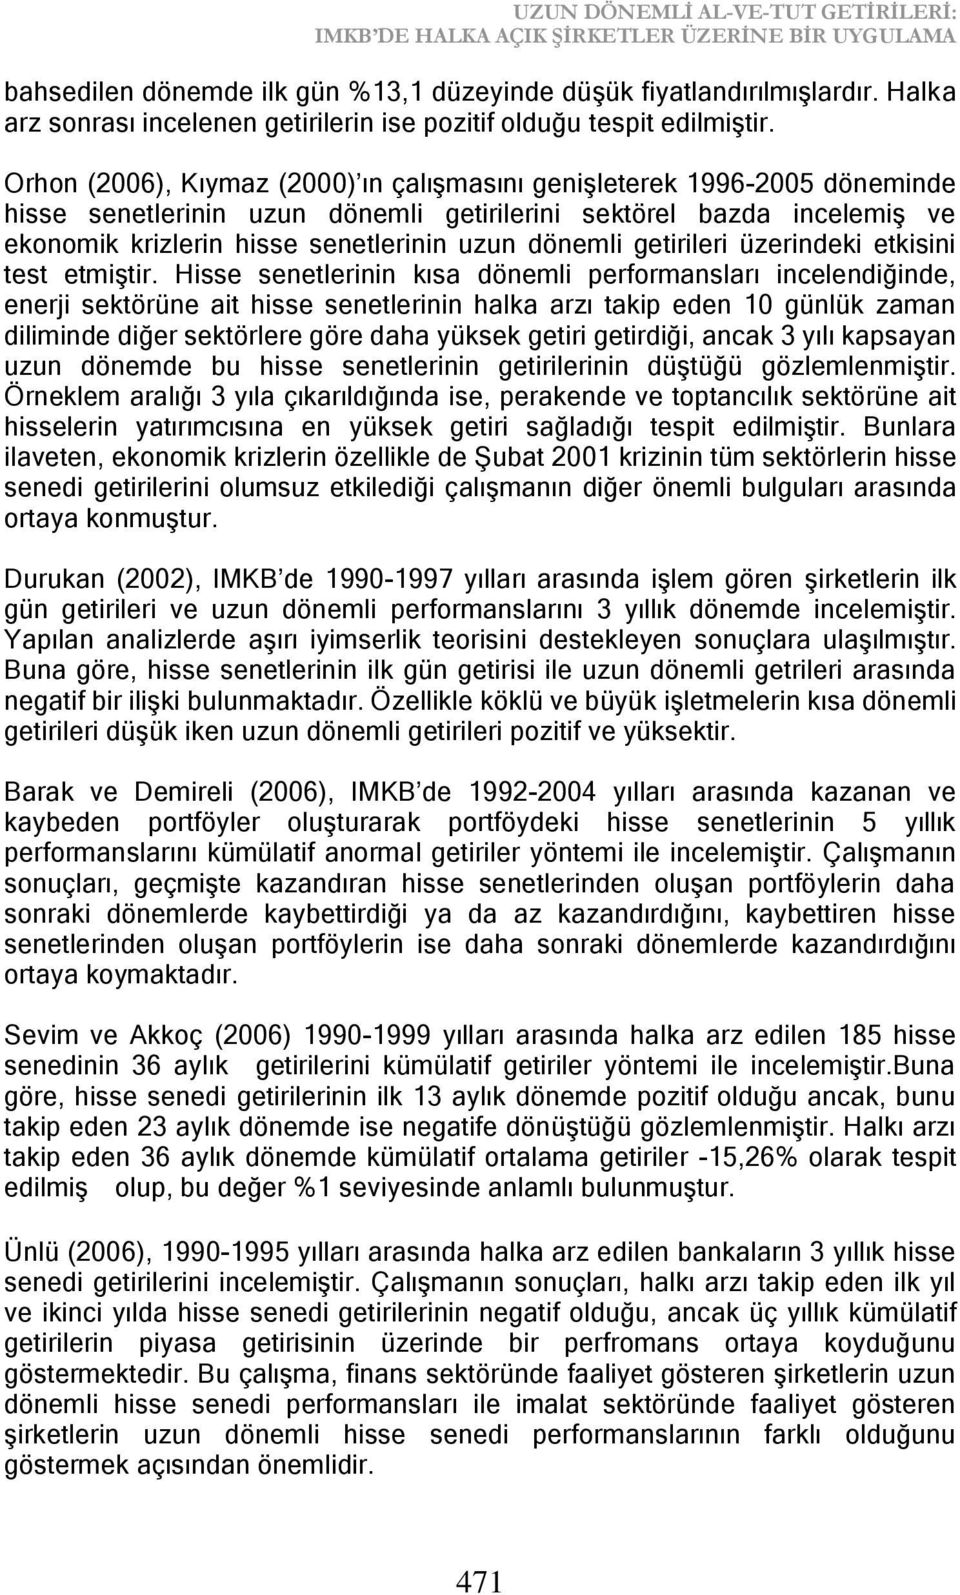 Orhon (2006), Kıymaz (2000) ın çalıģmasını geniģleterek 1996-2005 döneminde hisse senetlerinin uzun dönemli getirilerini sektörel bazda incelemiģ ve ekonomik krizlerin hisse senetlerinin uzun dönemli